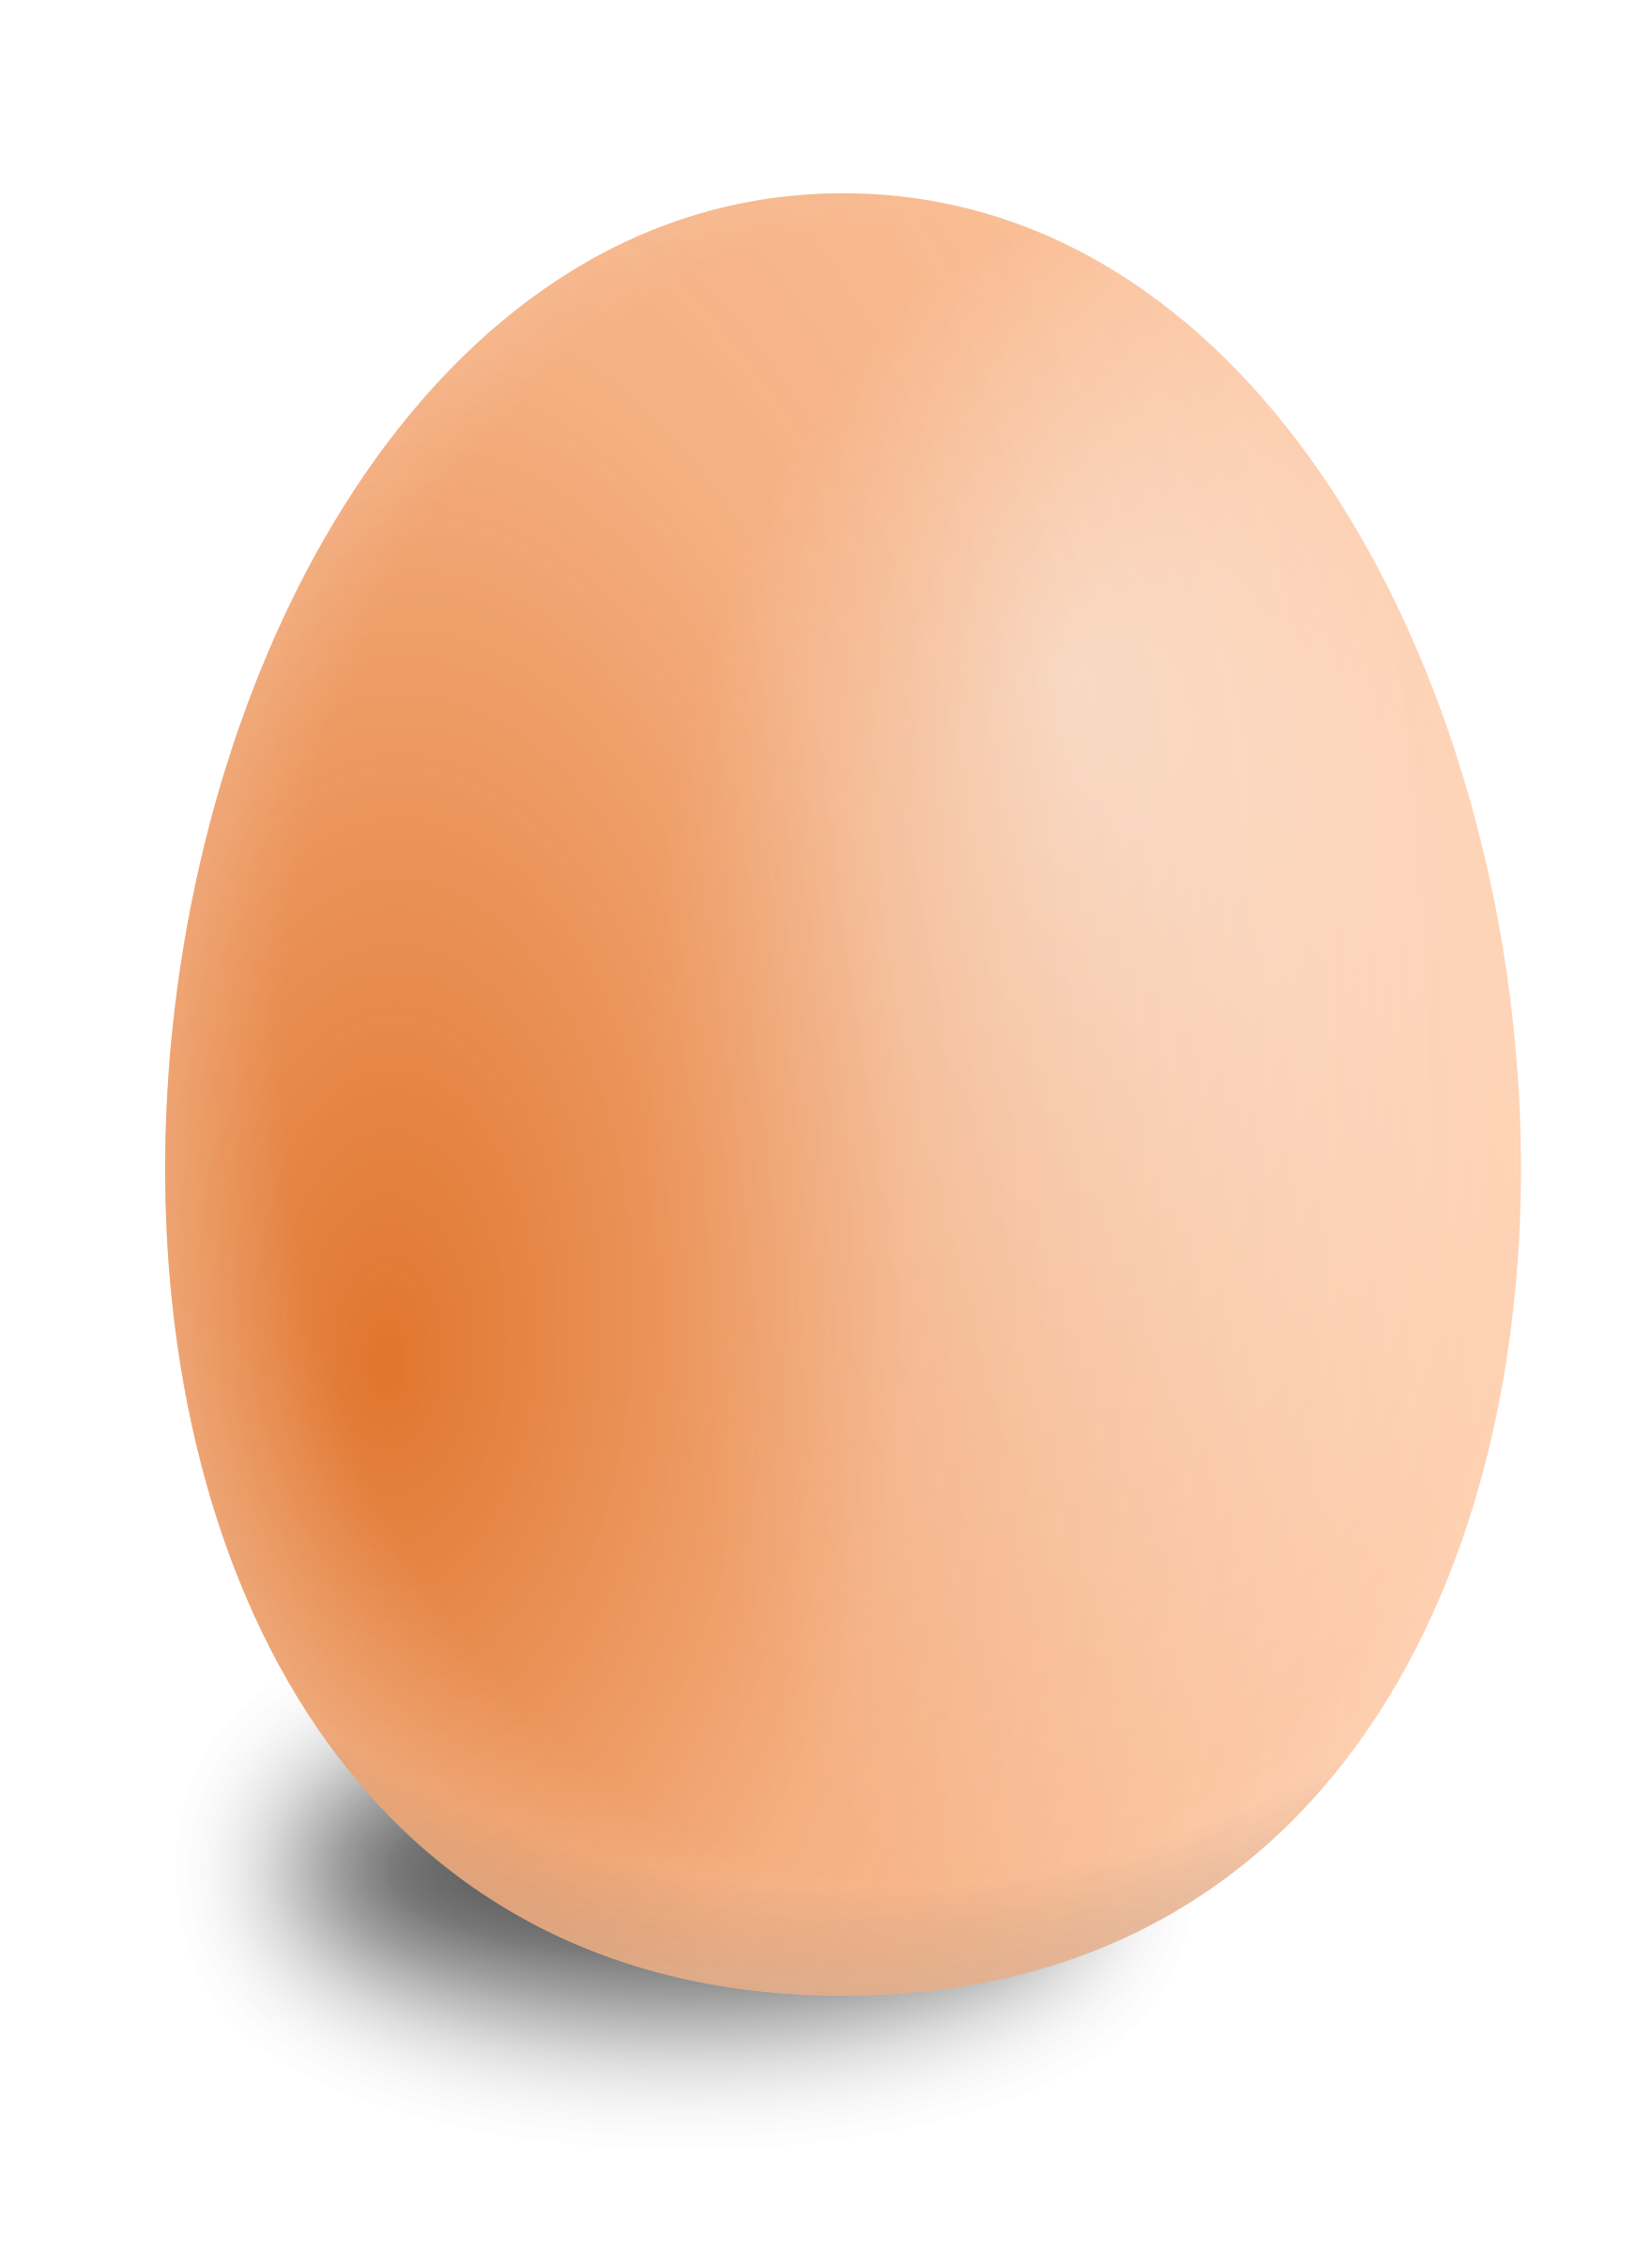 Egg clipart 2 - Clipart Egg